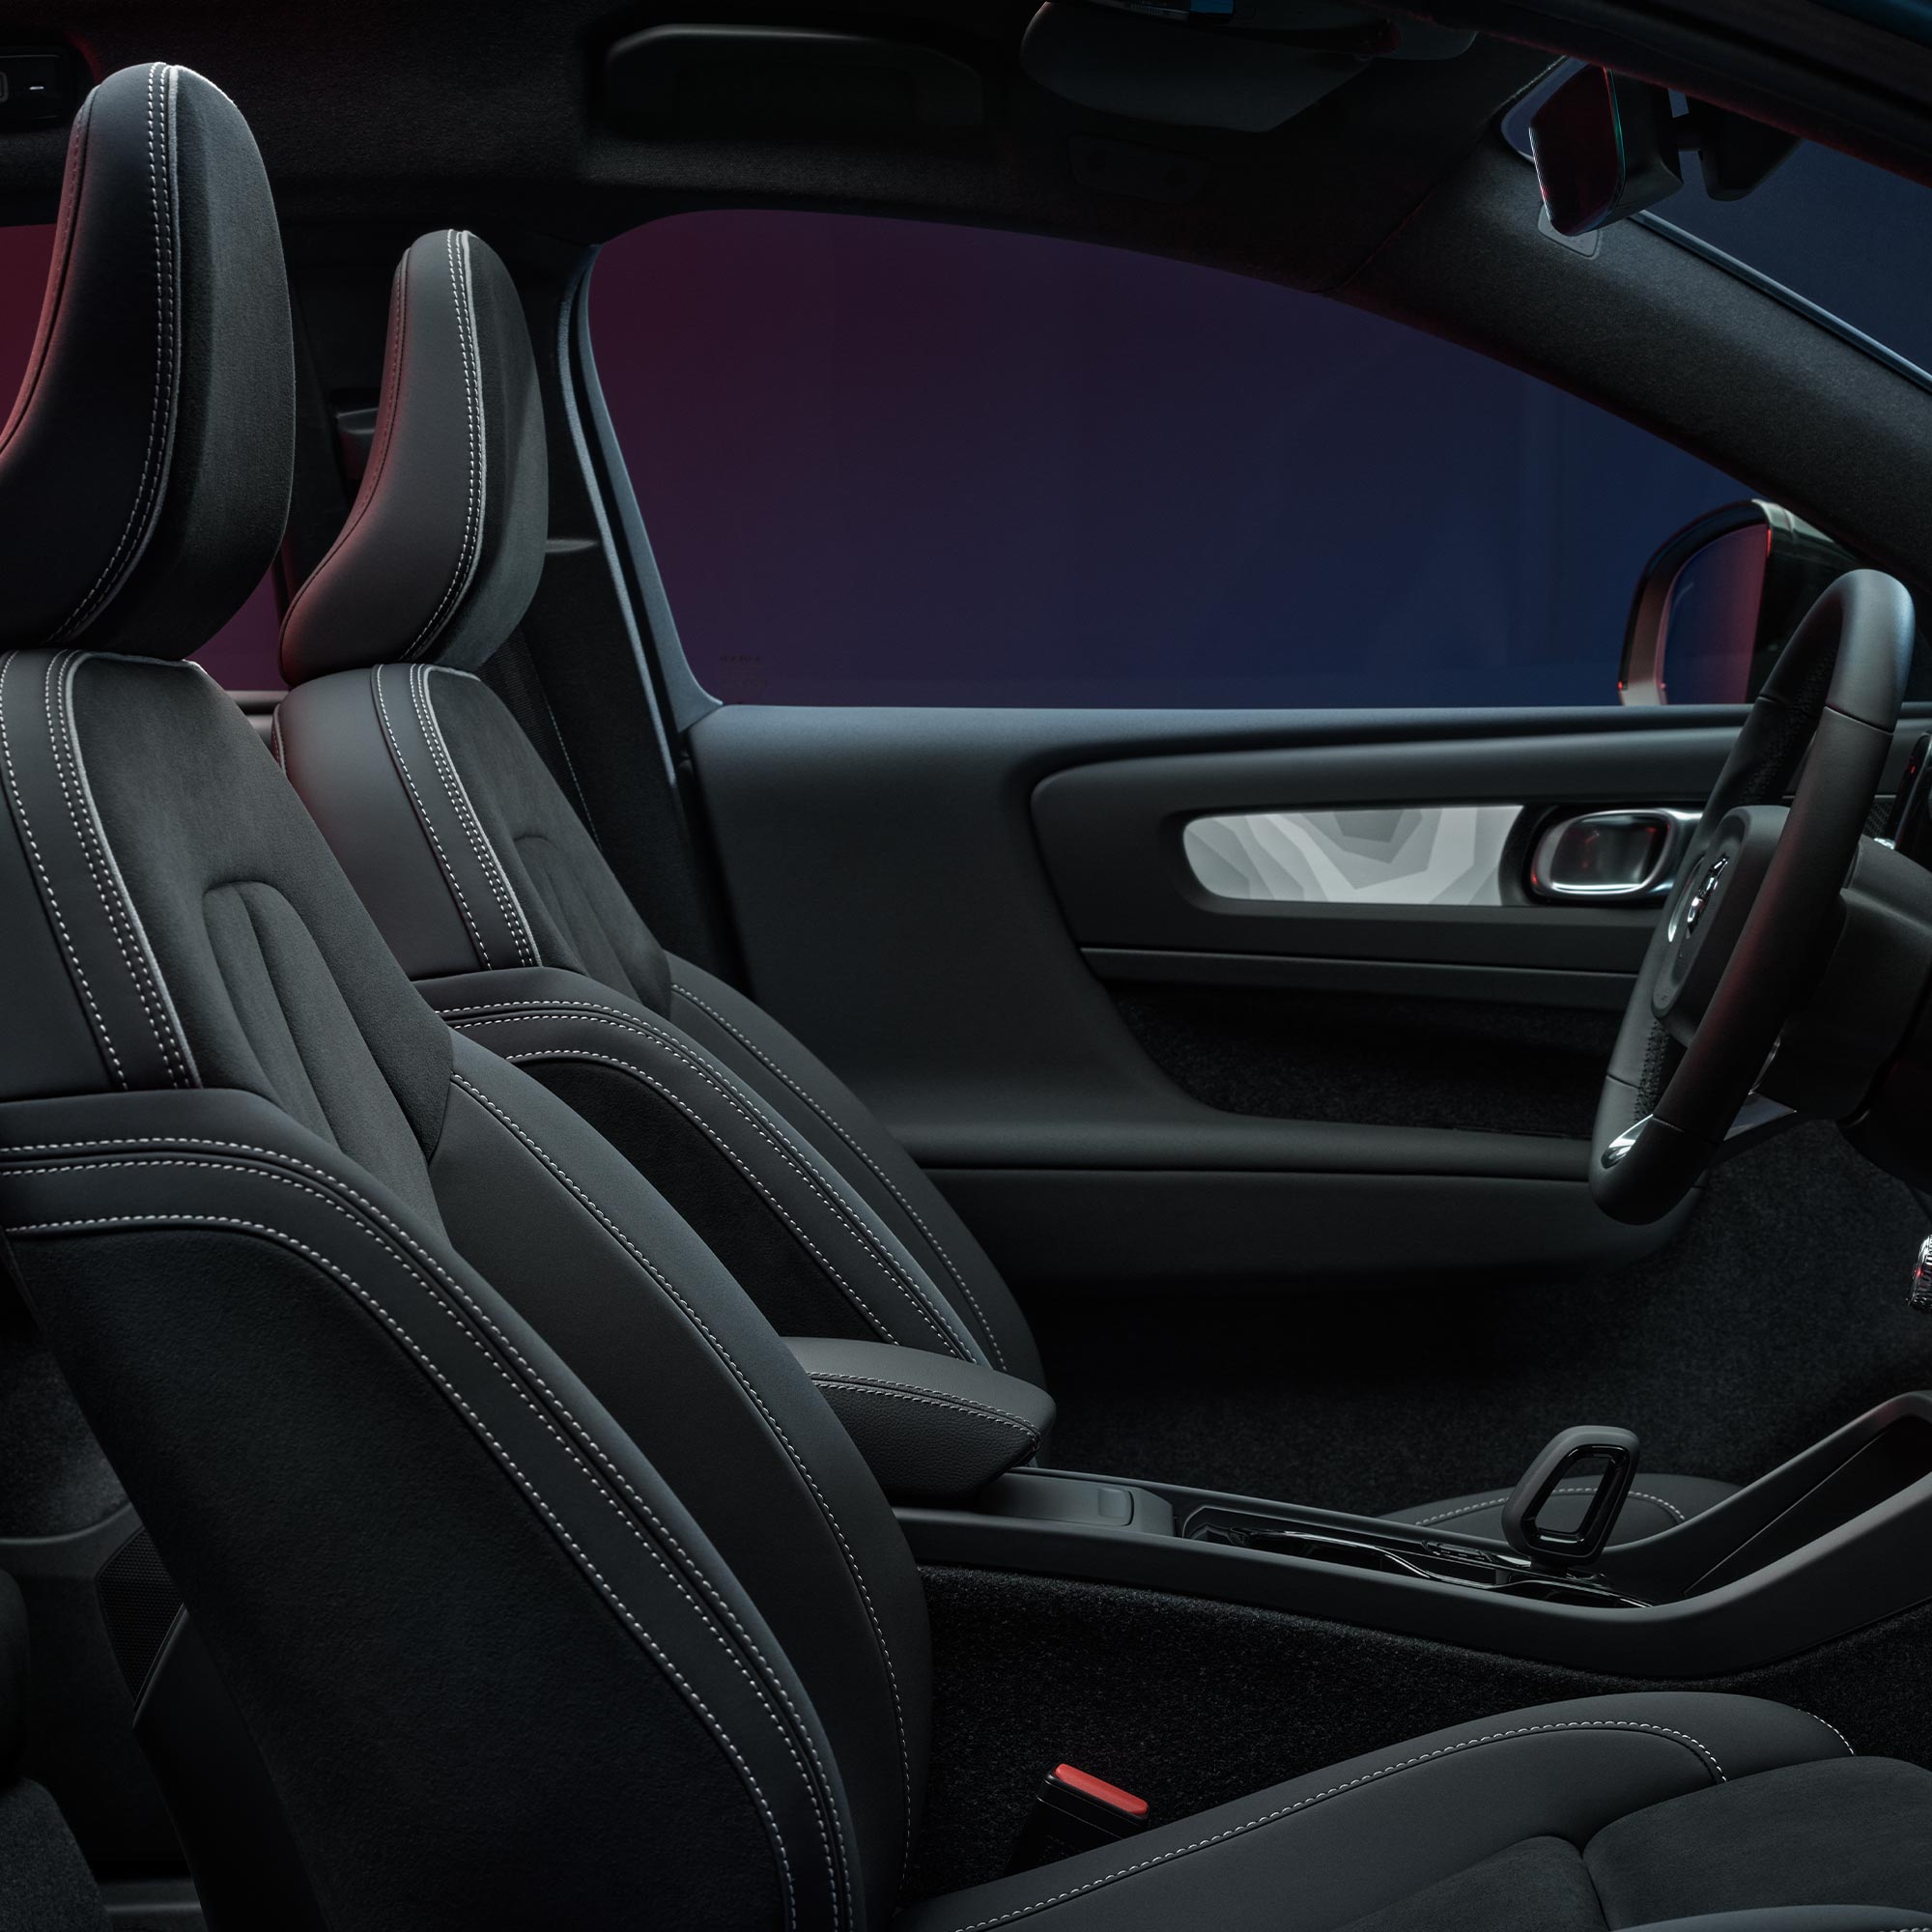 Vista interior de los asientos delanteros y el volante del Volvo C40 Recharge.